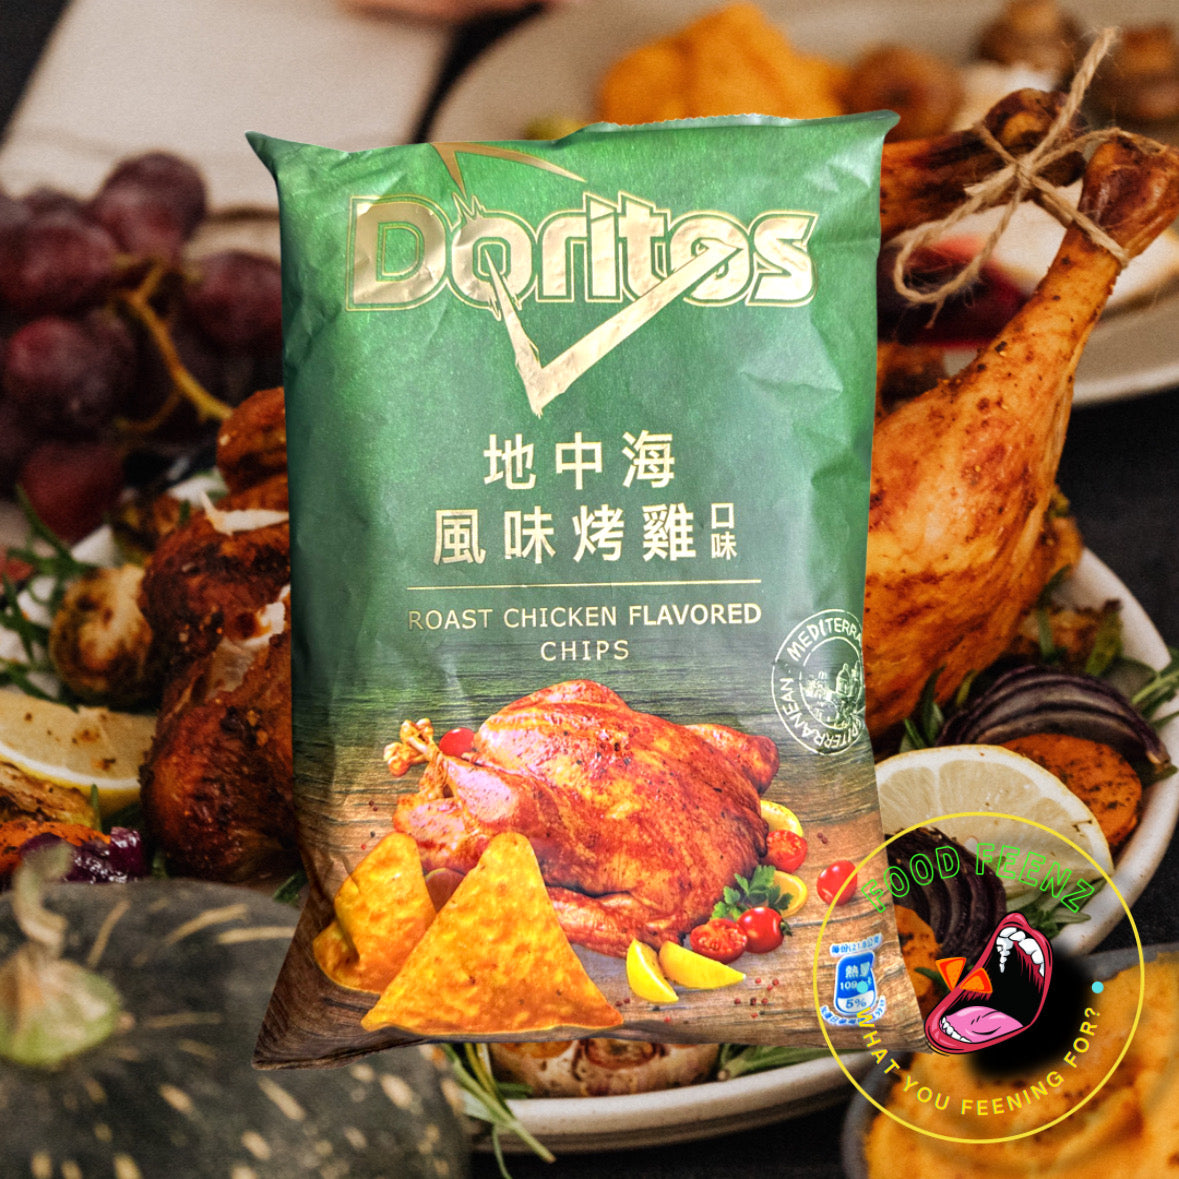 Doritos Roast Chicken Flavor (Taiwan)